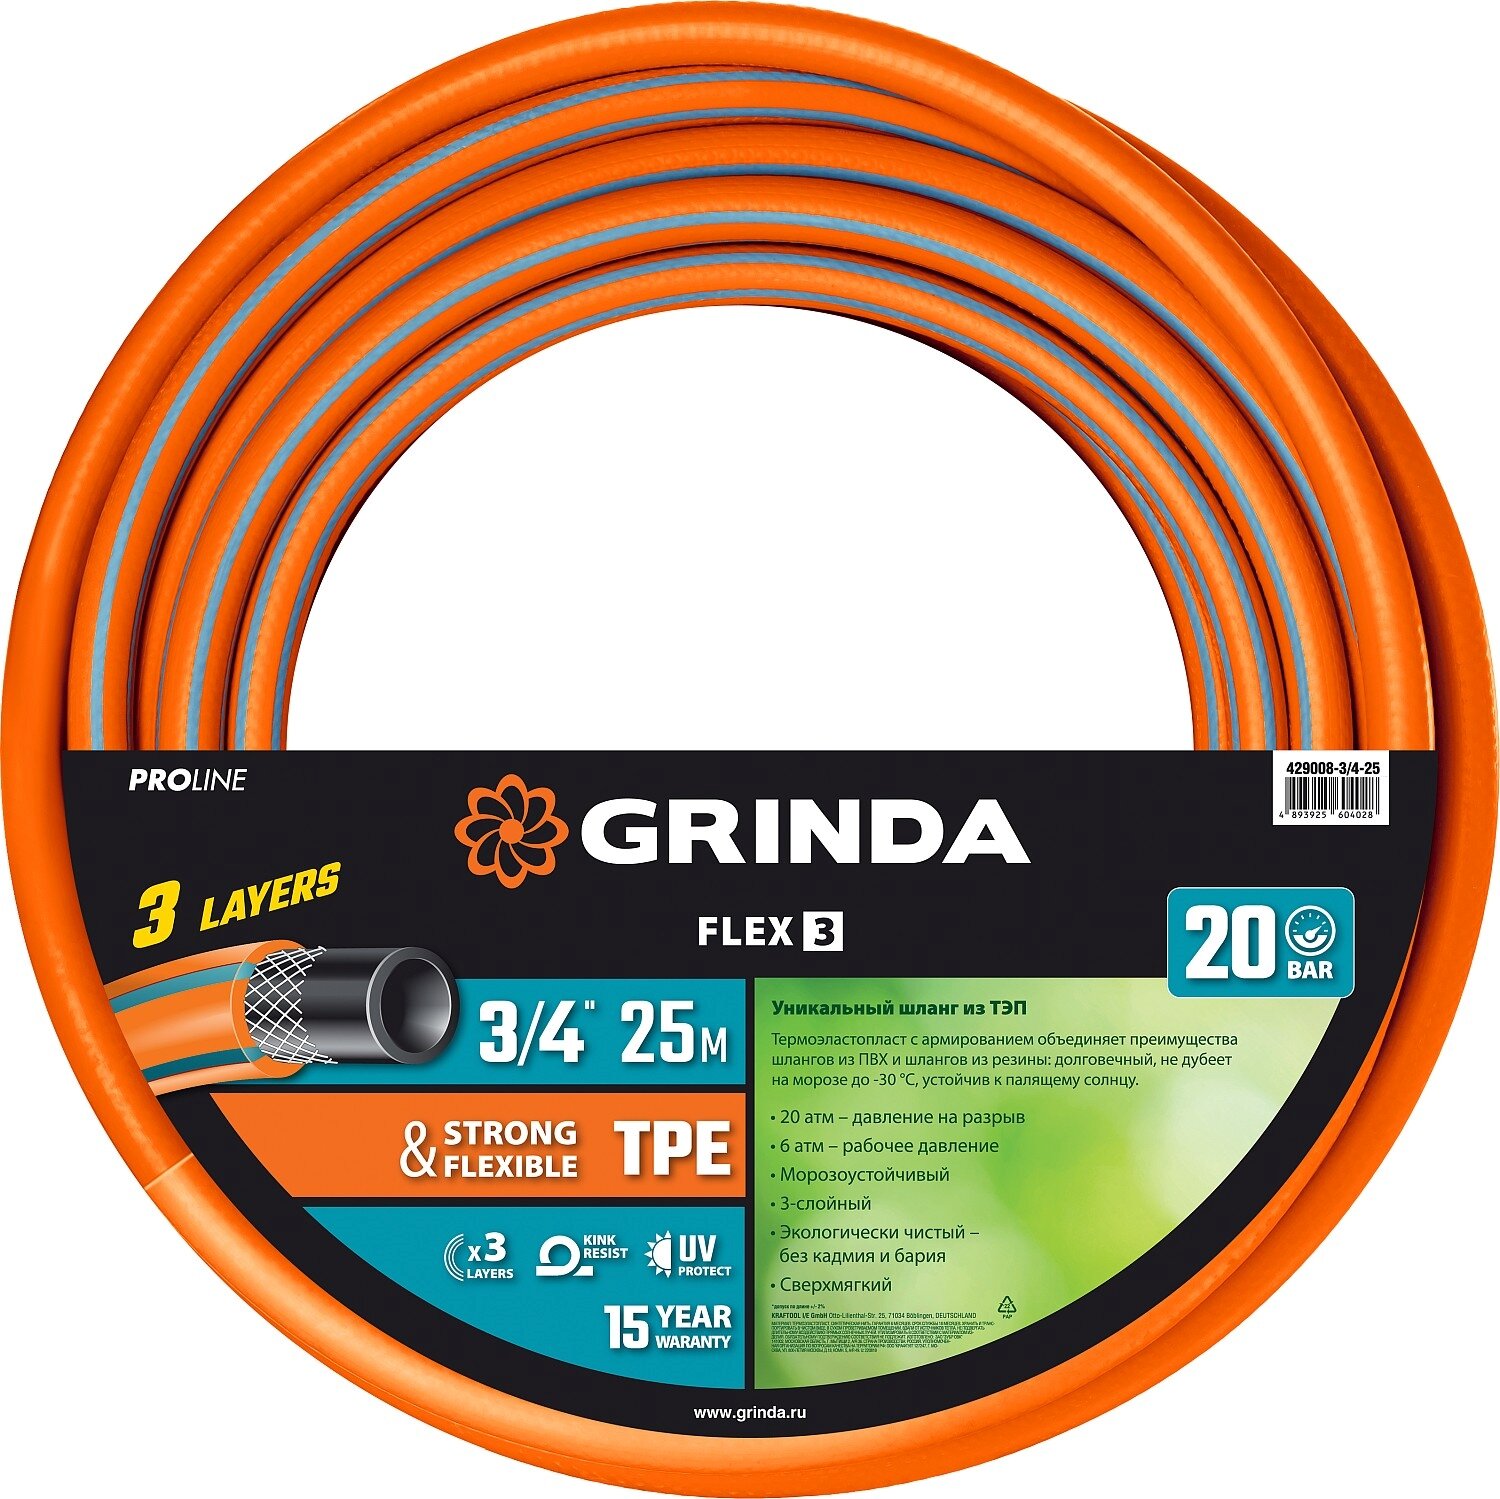 Поливочный трёхслойный армированный шланг GRINDA PROLine FLEX 3/4", 25 м, 20 атм 429008-3/4-25